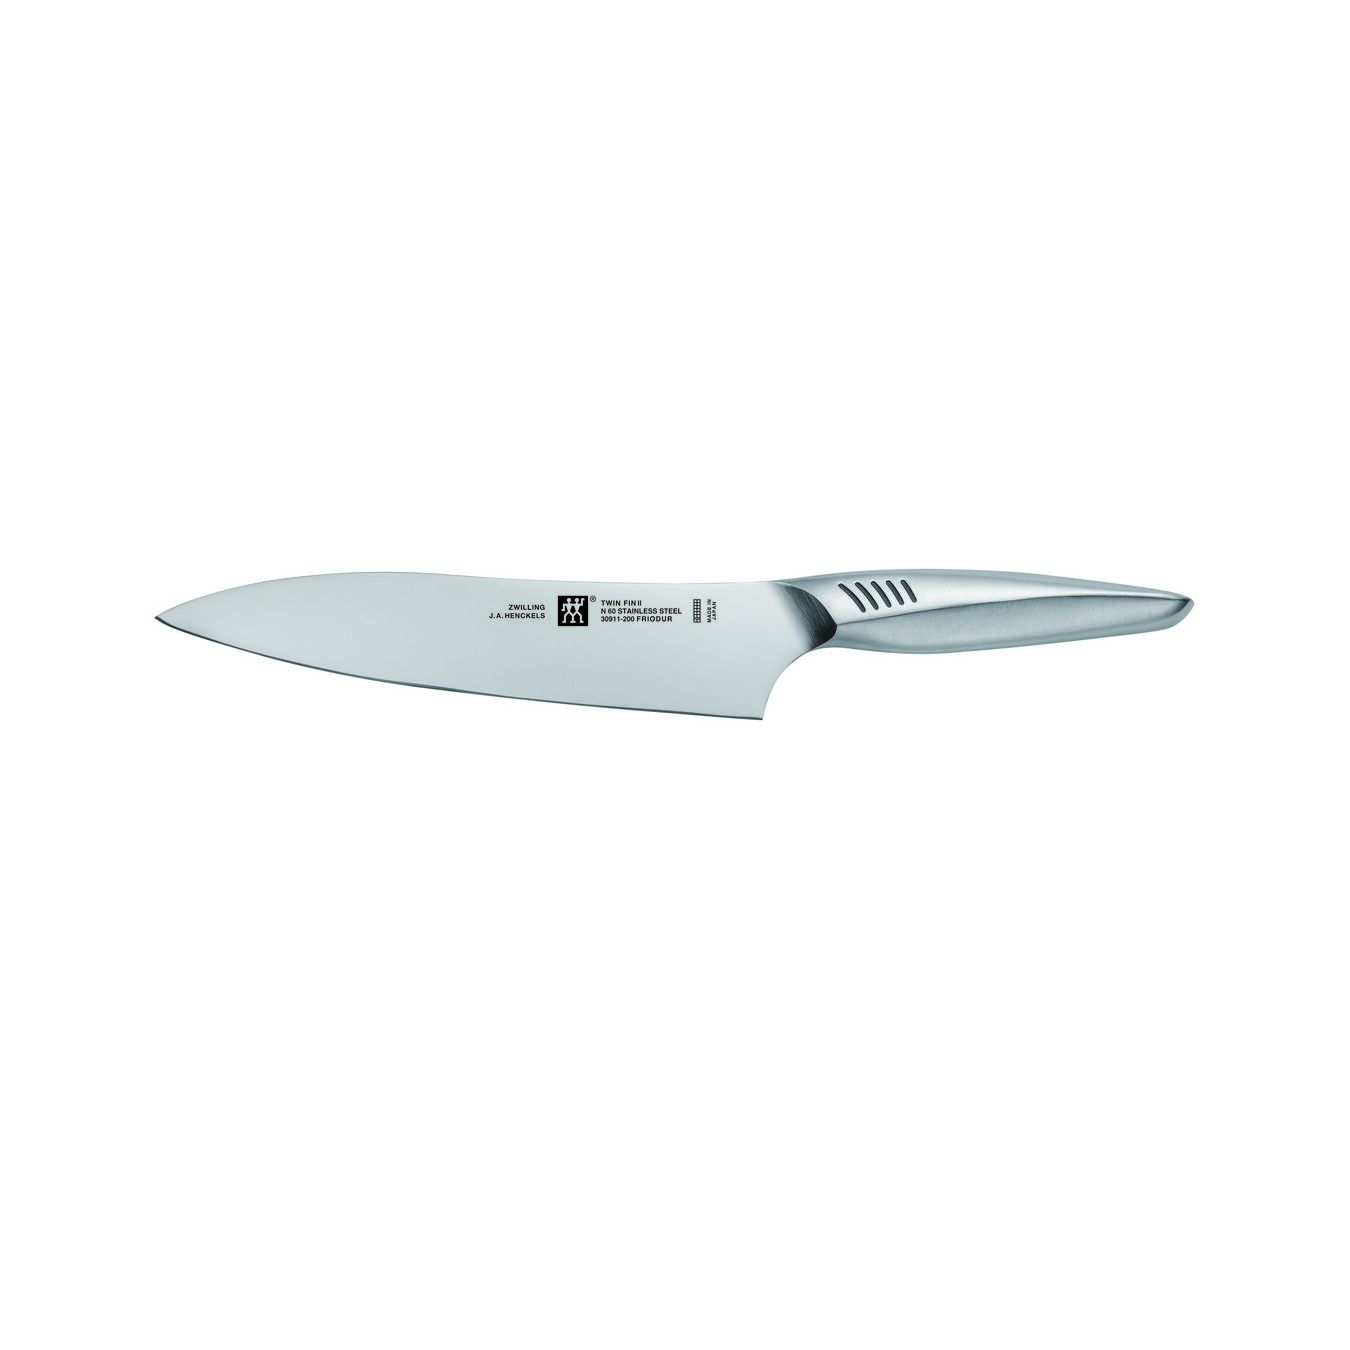 Couteau de chef 20 cm, Argent, Acier inoxydable,,large 1